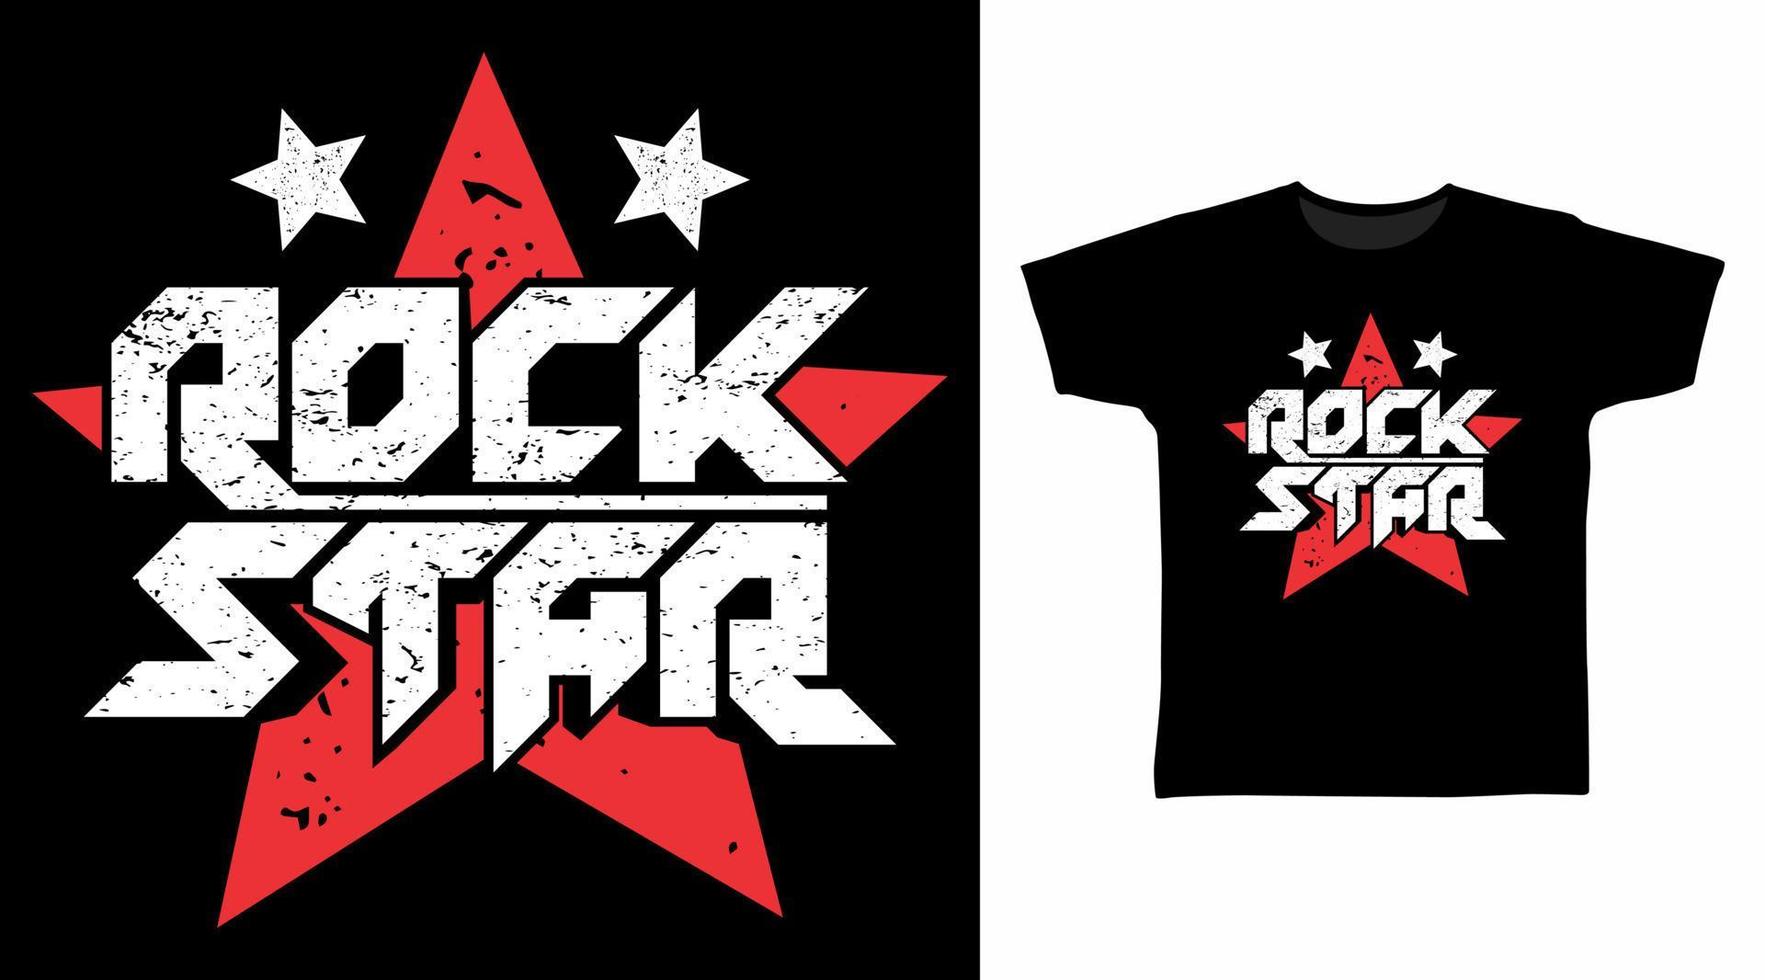 Rock star typography tee design concept vector